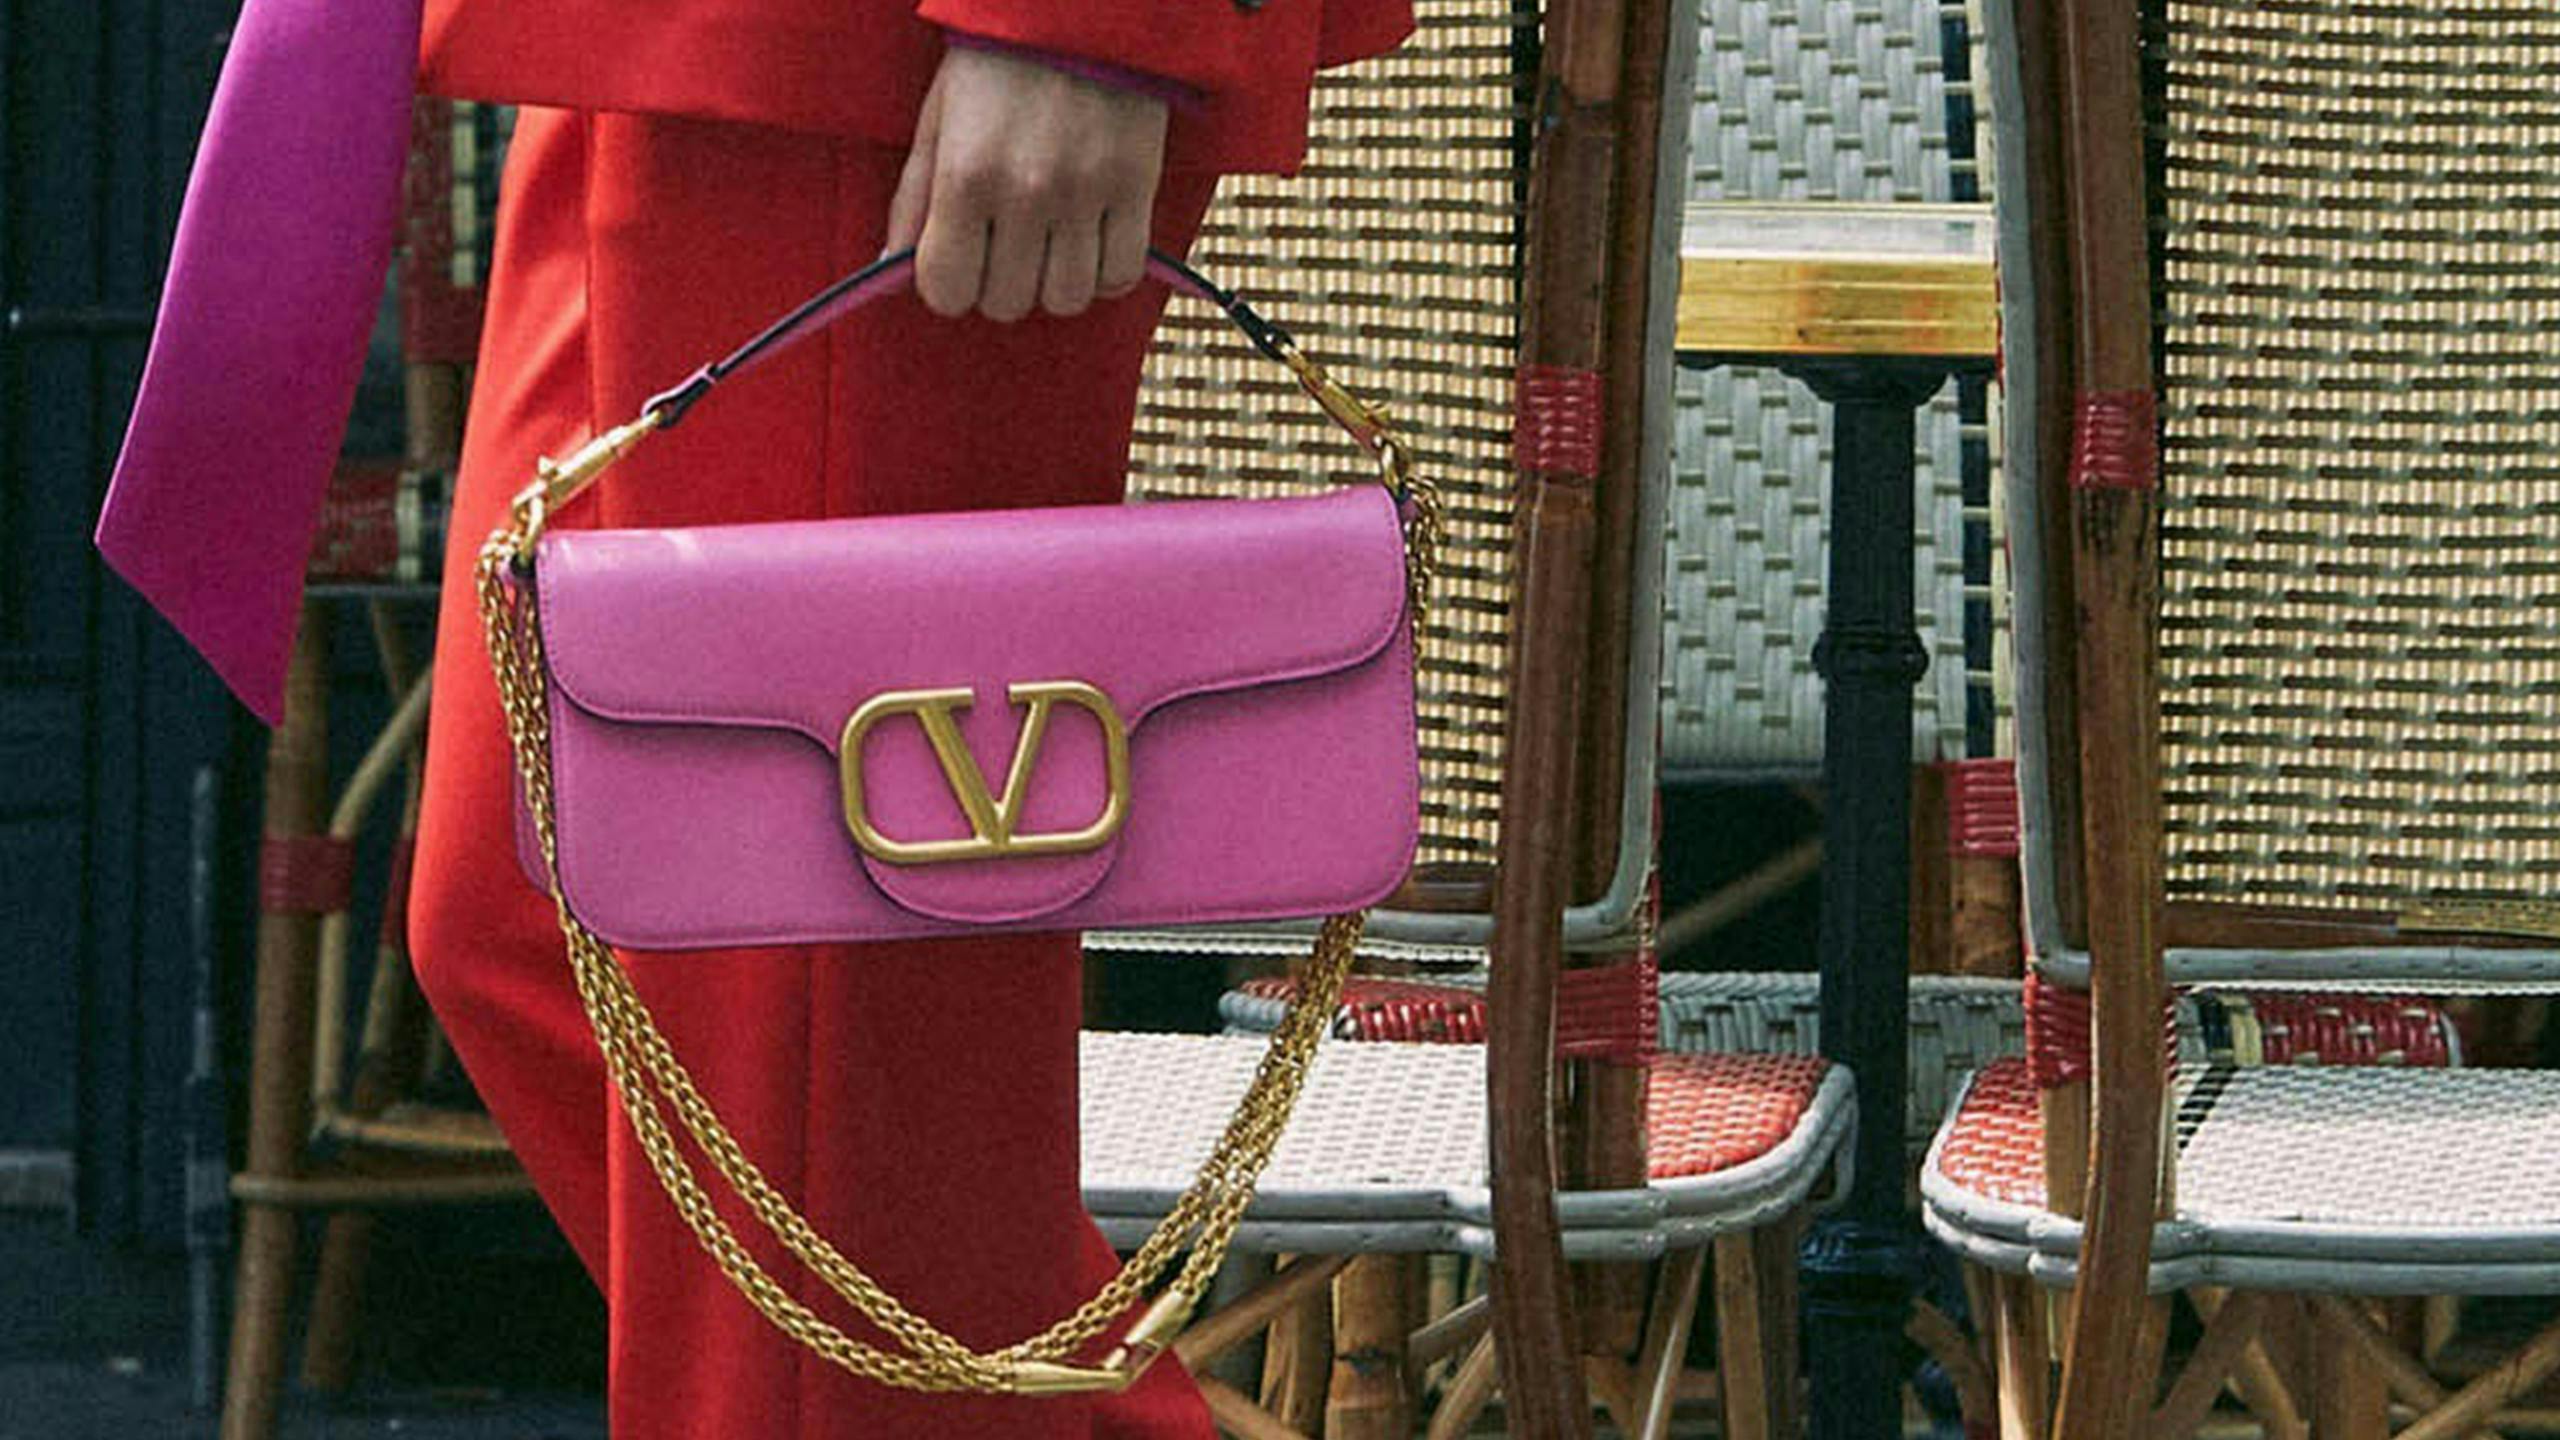 handbag accessories bag accessory